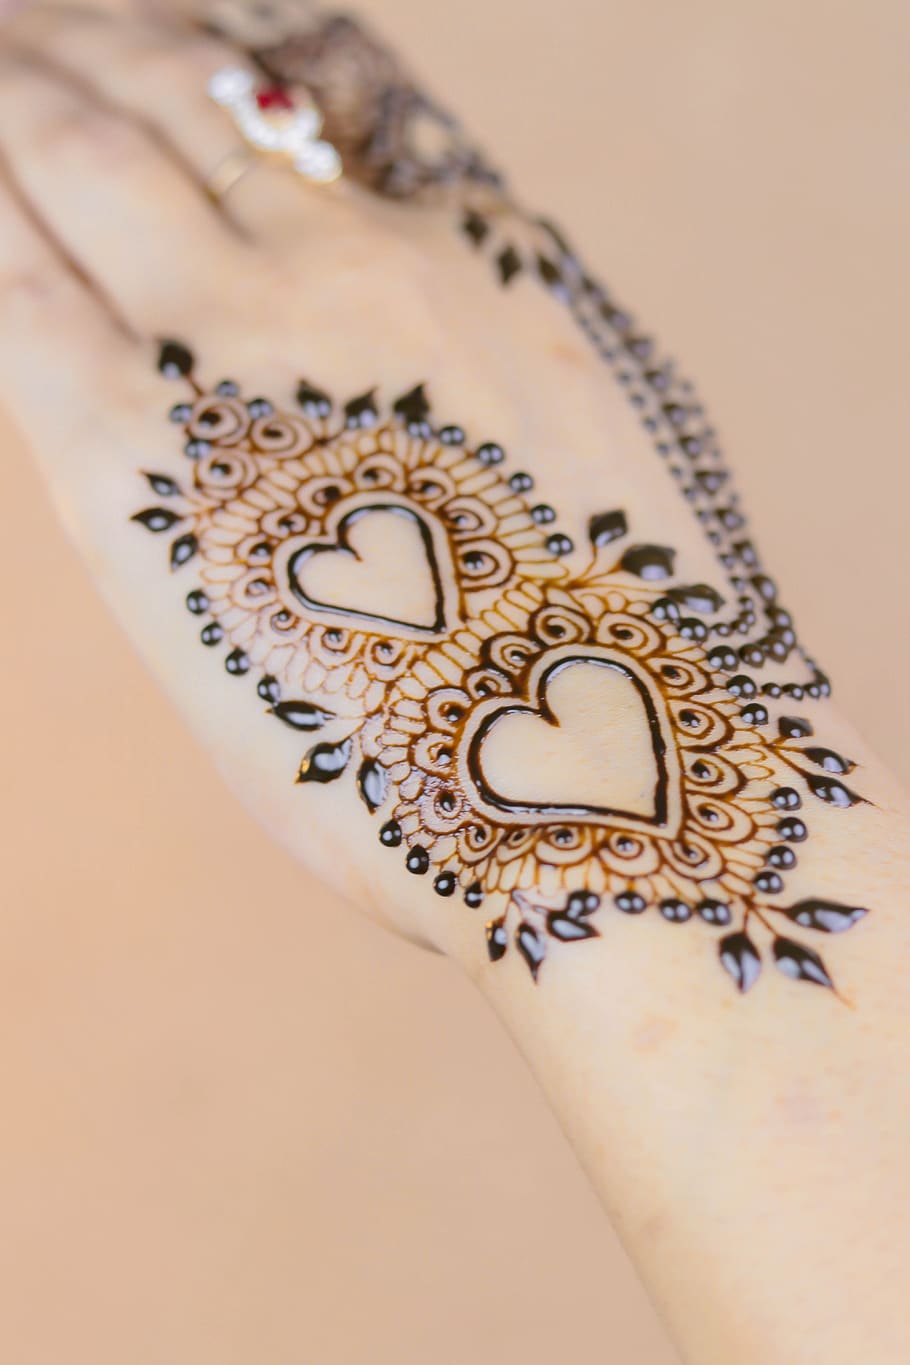 hena, mãos, padrão, feminino, palmas das mãos, projeto, decoração, arte, indiano, étnica